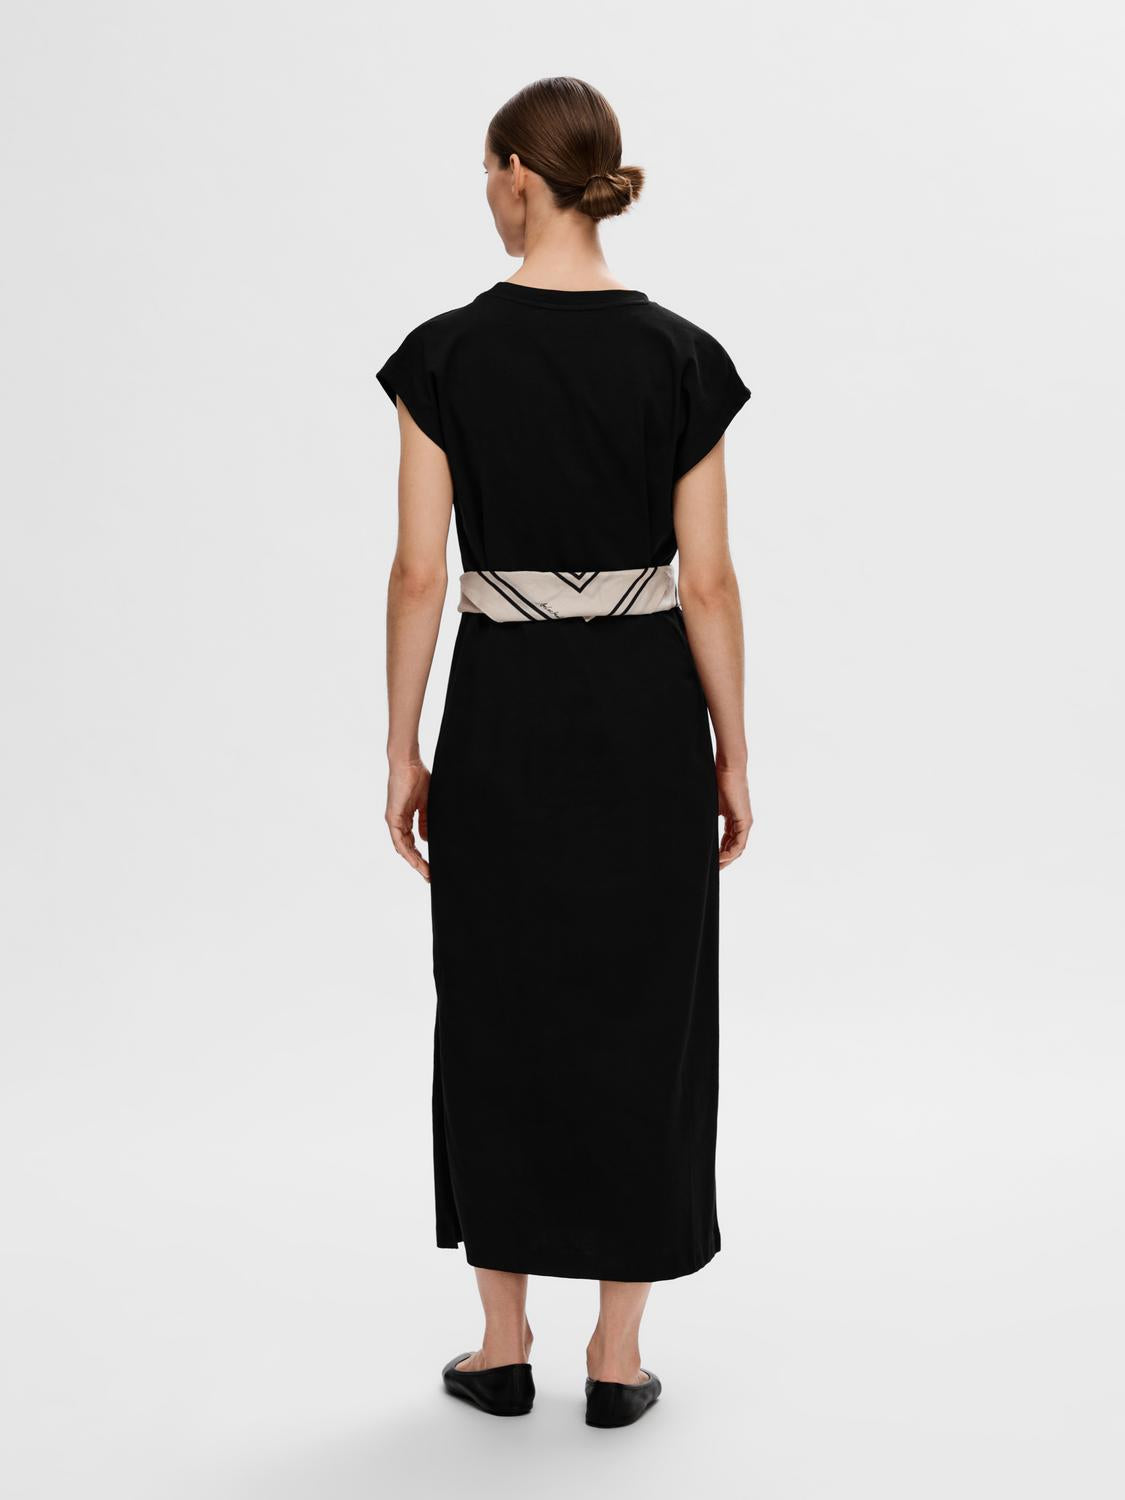 Selected Femme "Essential" V-Neck Ankle Dress schwarz